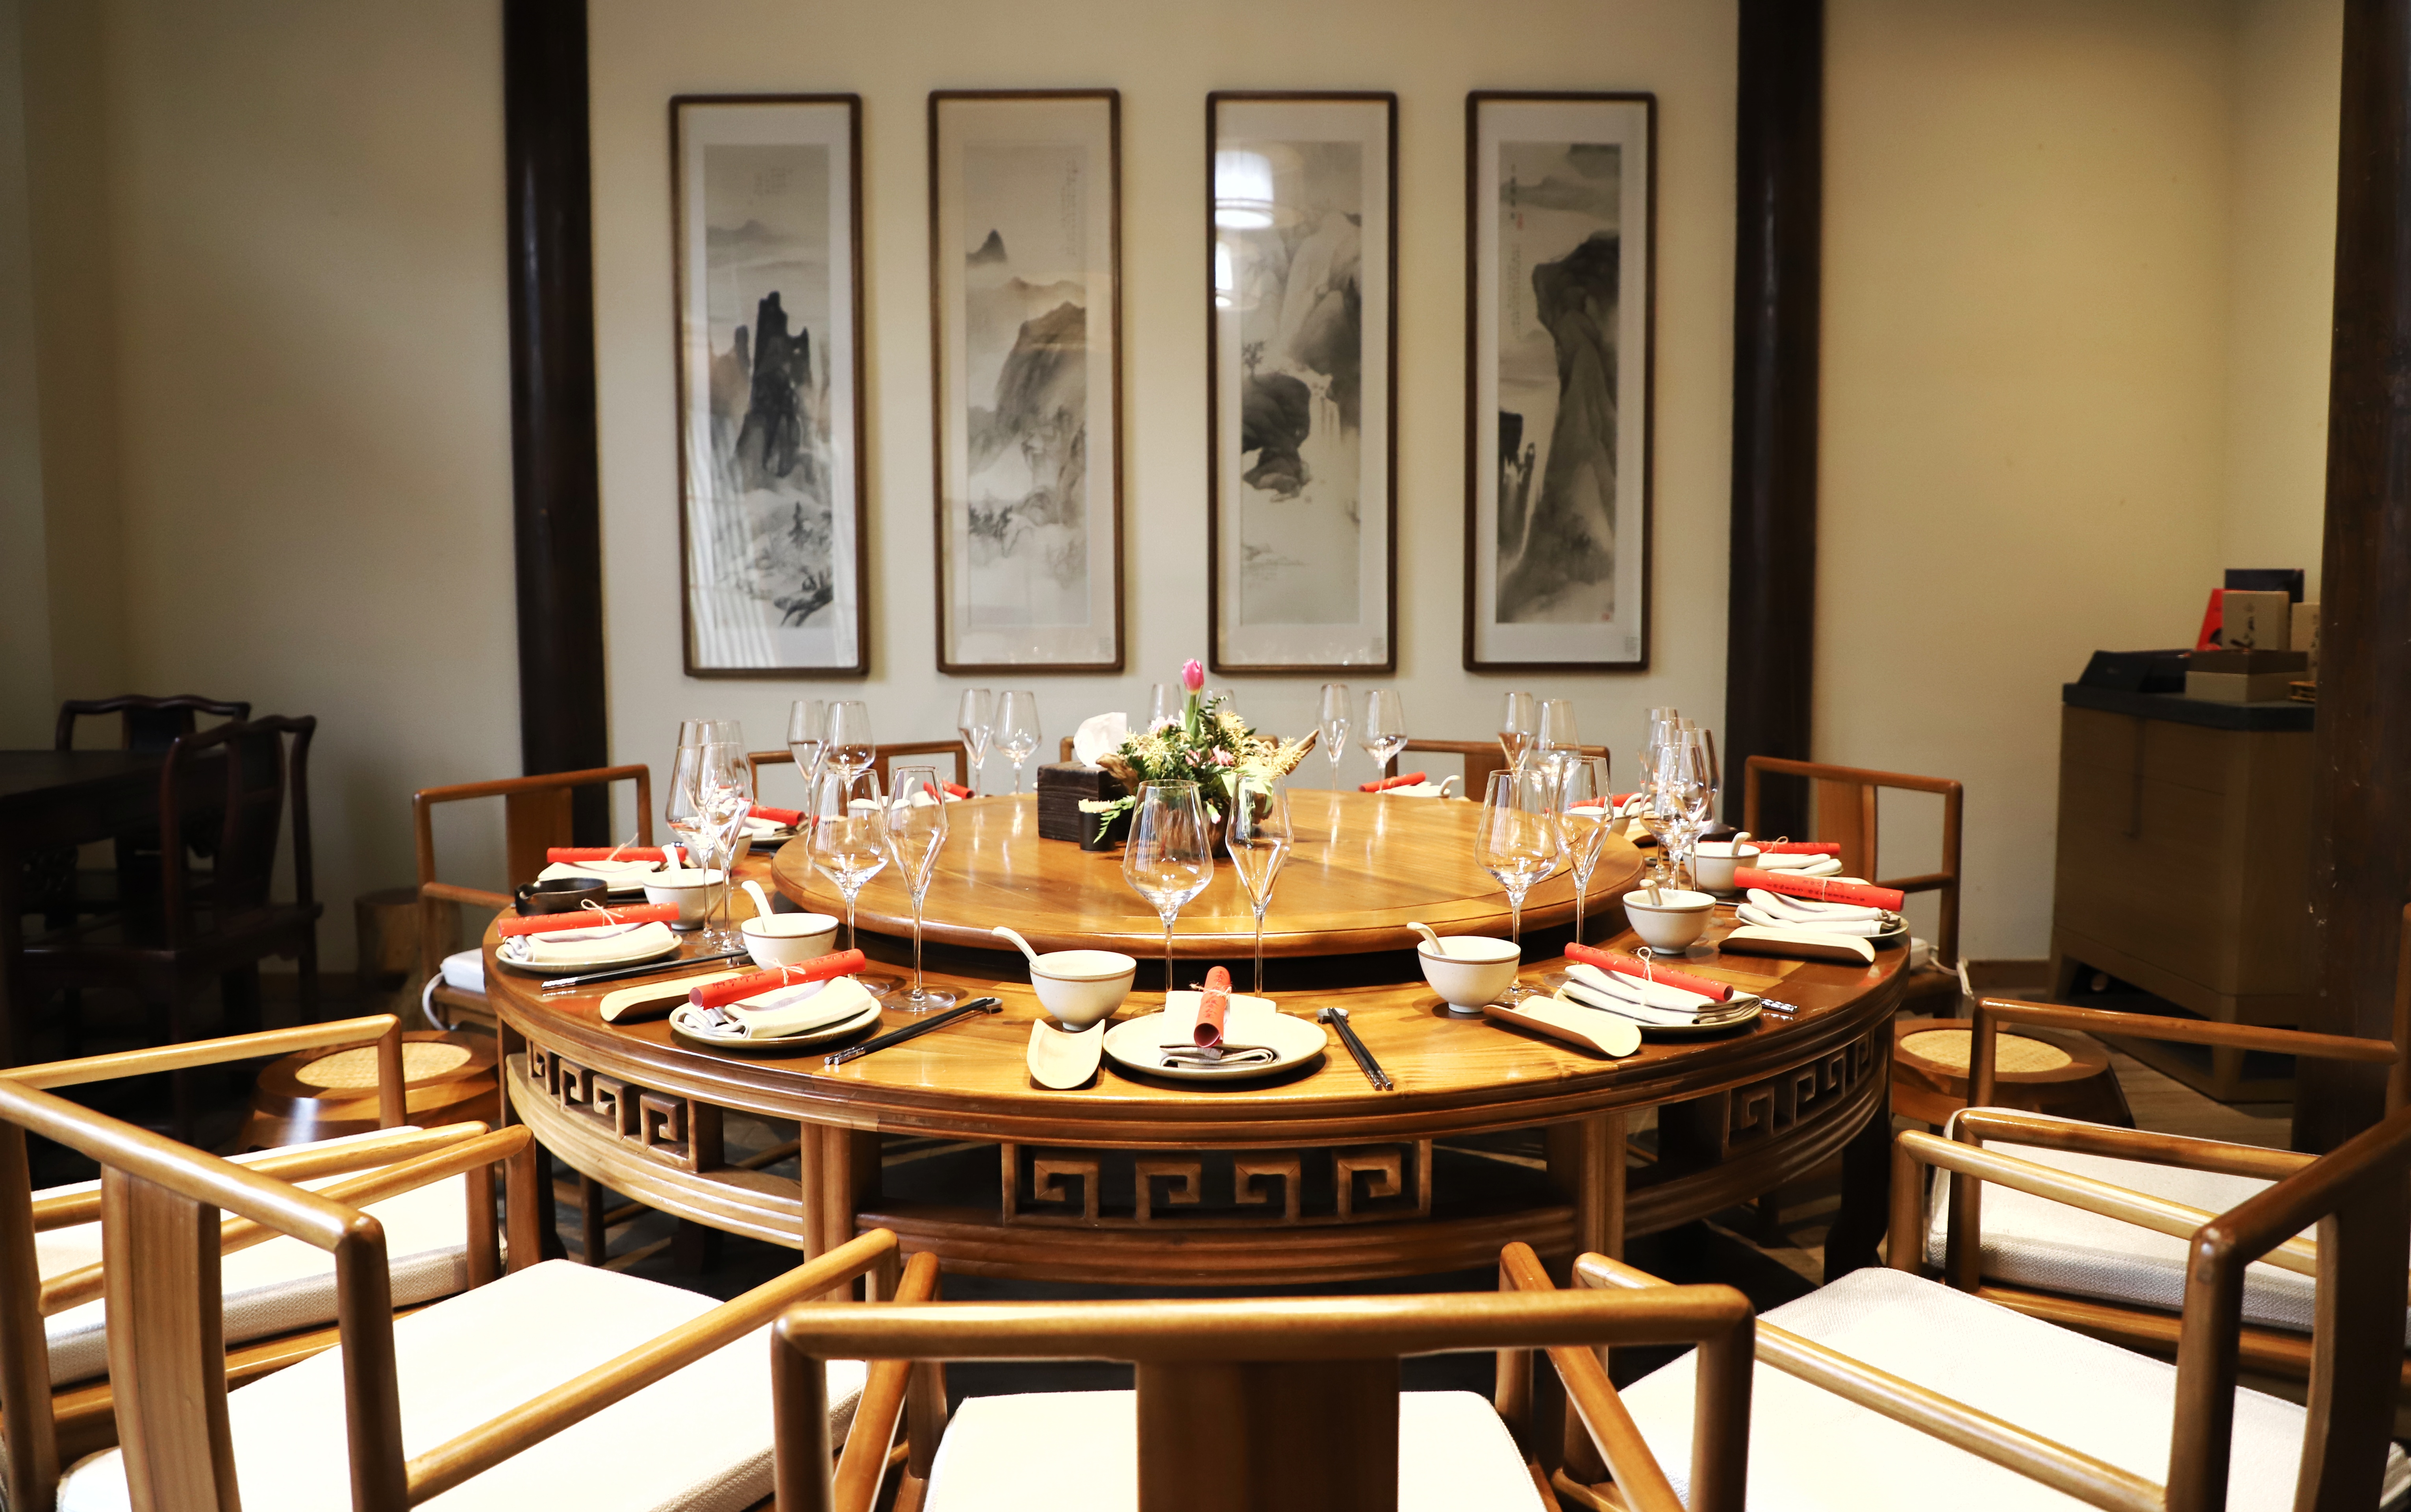 中式宴请餐桌布置图片